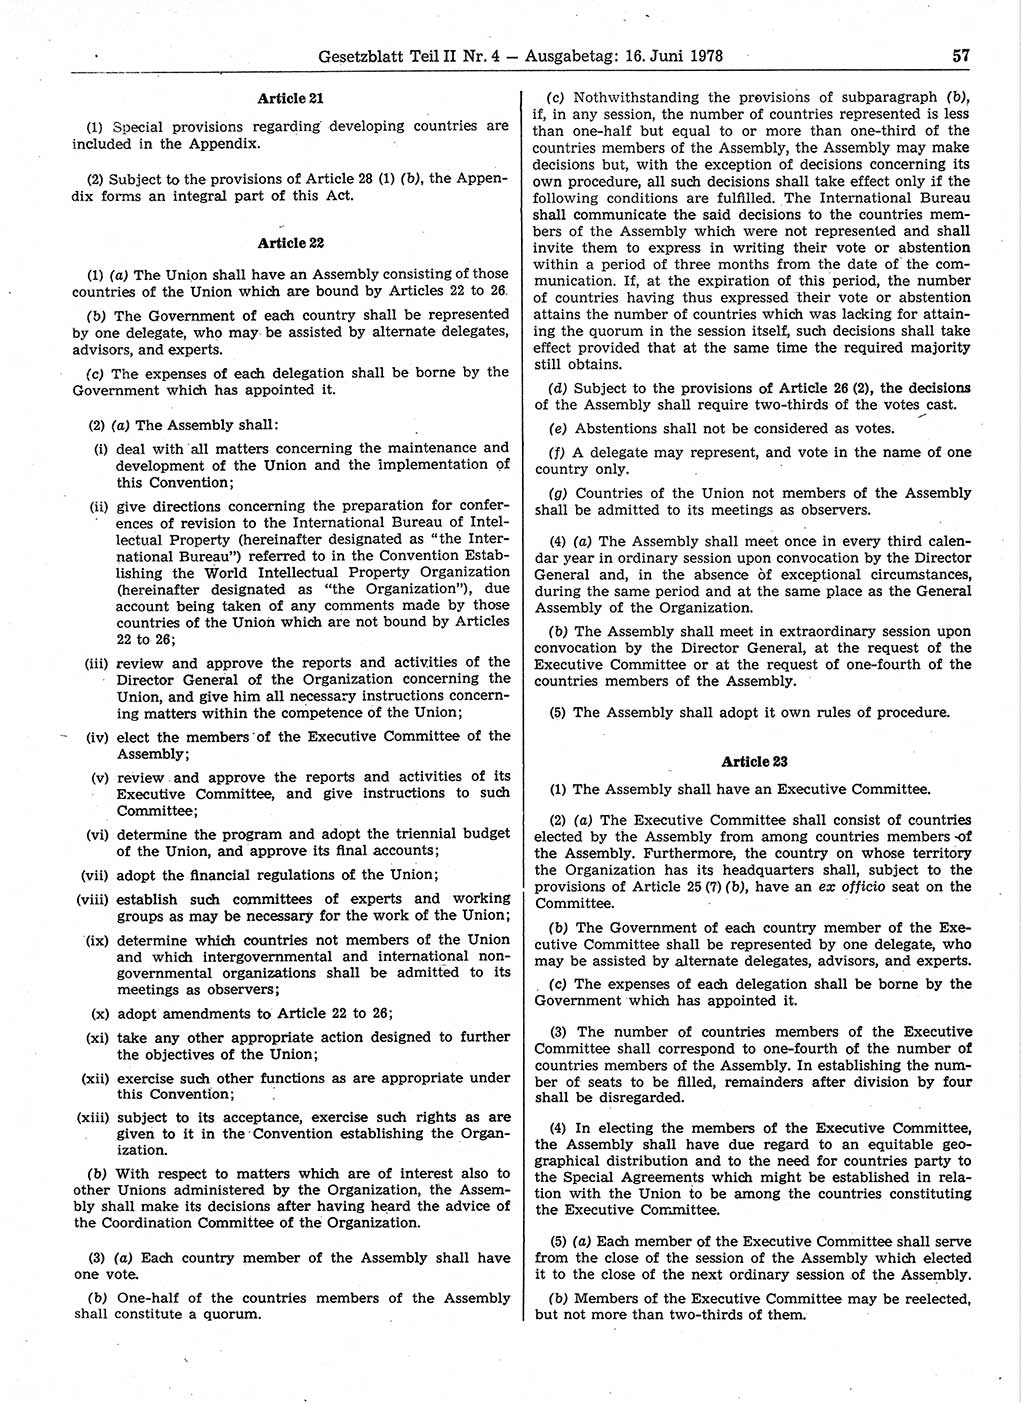 Gesetzblatt (GBl.) der Deutschen Demokratischen Republik (DDR) Teil ⅠⅠ 1978, Seite 57 (GBl. DDR ⅠⅠ 1978, S. 57)